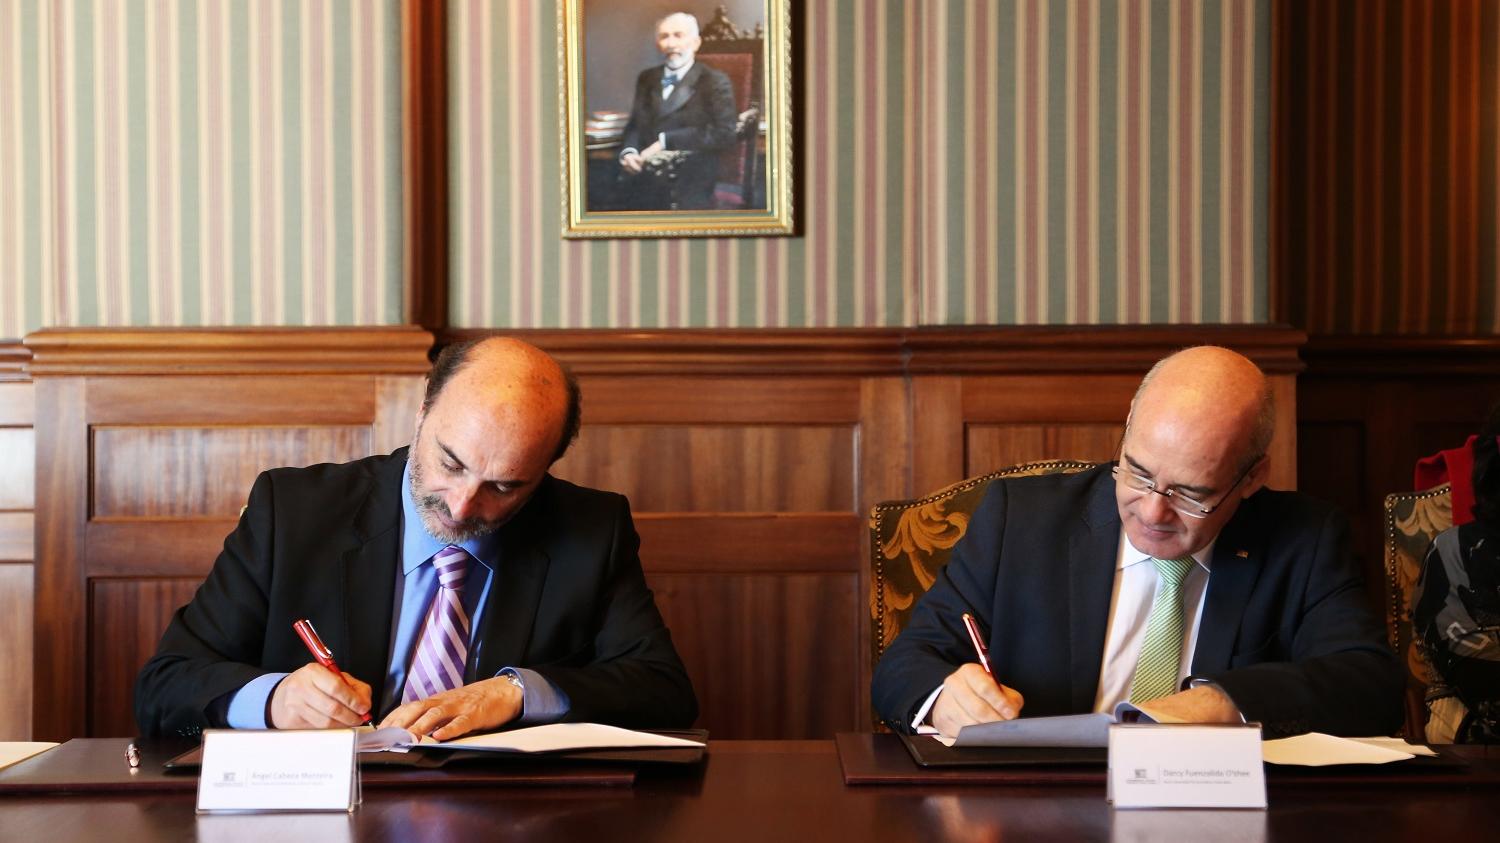 Director de la Dibam Ángel Cabeza junto al rector de la USM Darcy Fuenzalida firman el convenio